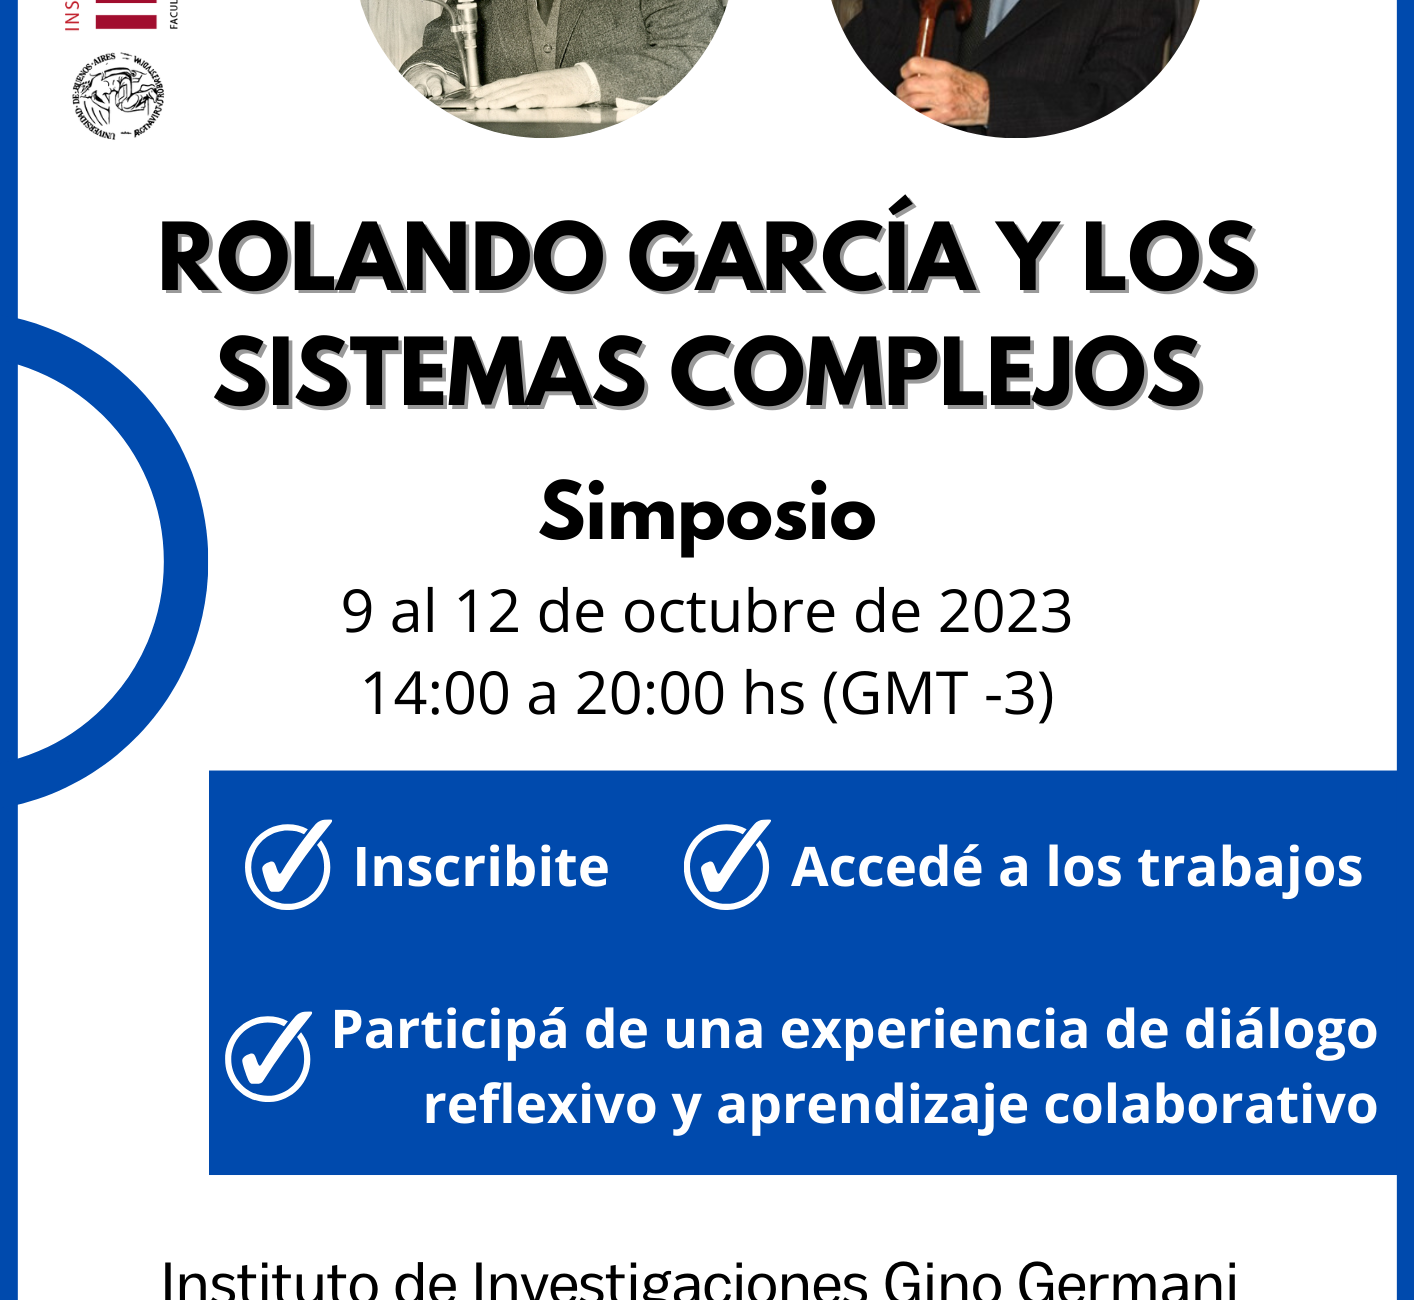 Rolando-Garcia-y-los-Sistemas-Complejos